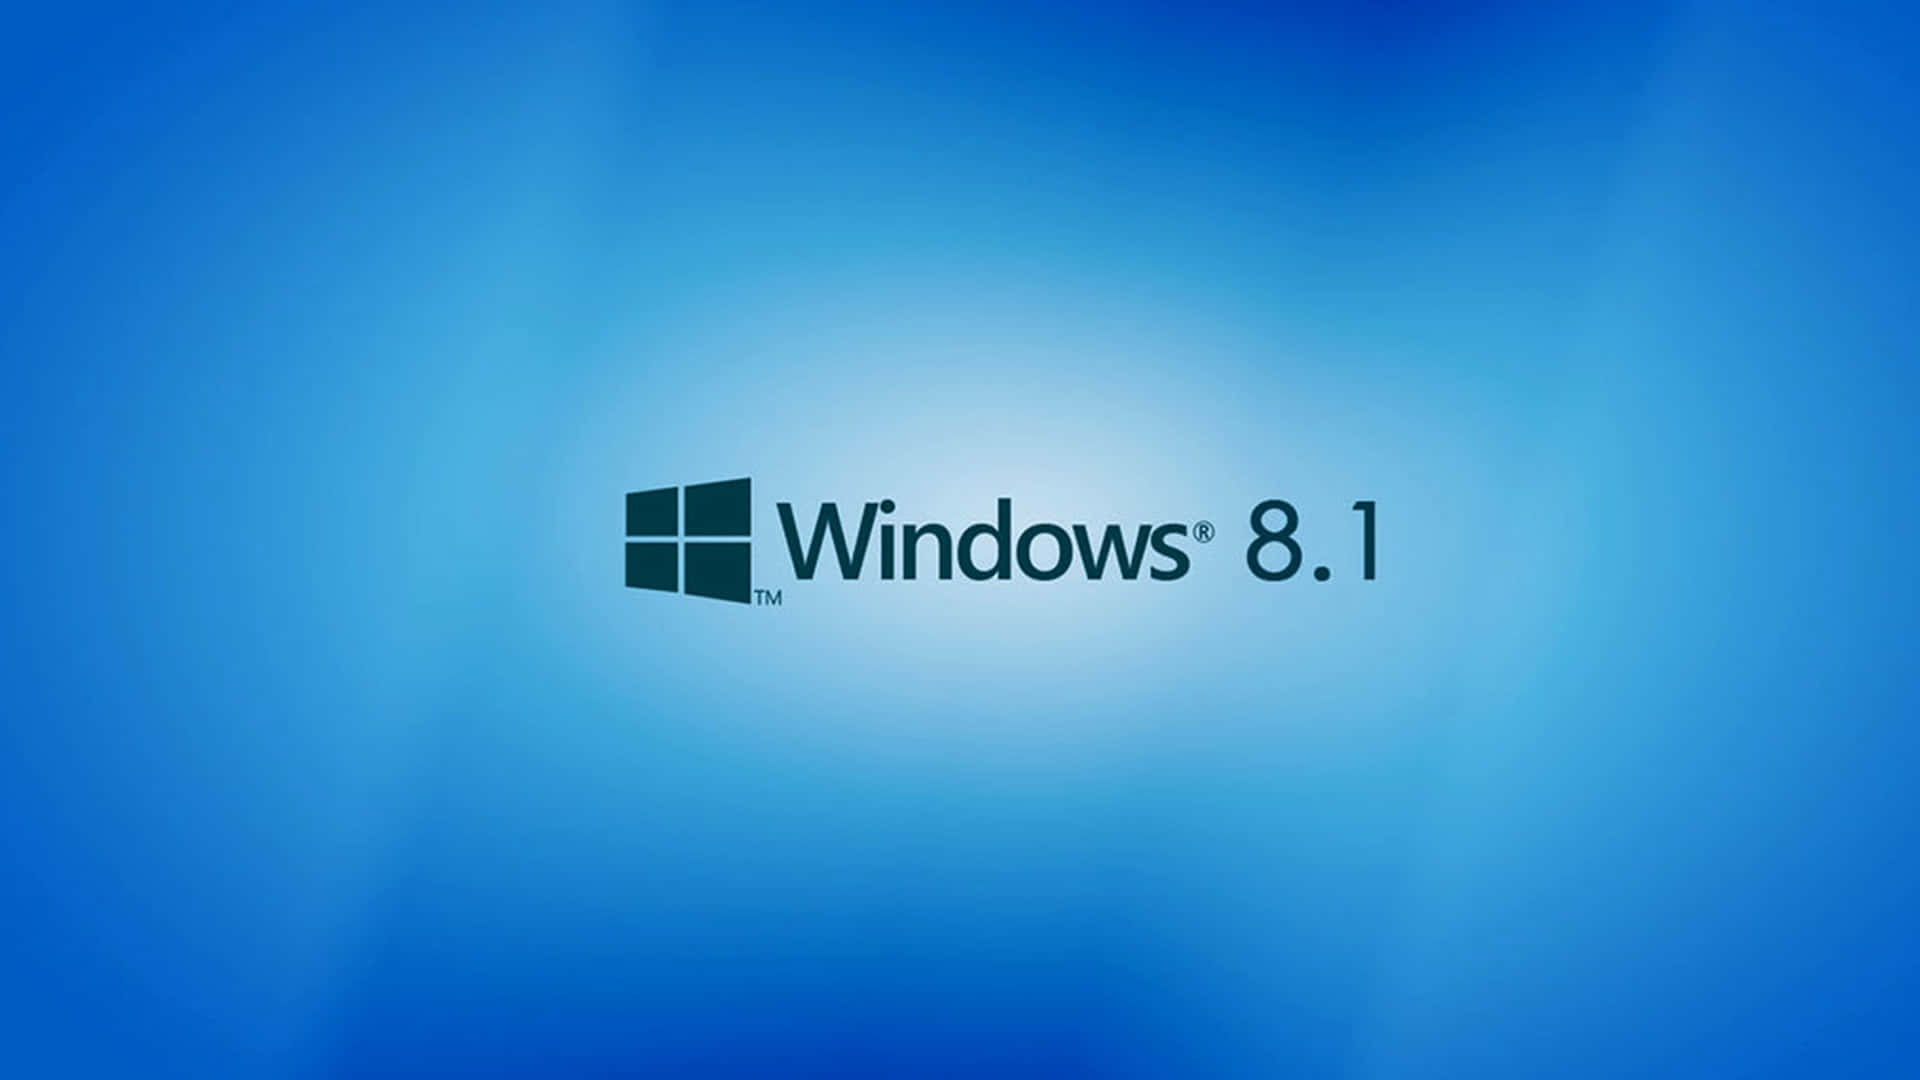 Papelde Parede Clássico Azul Do Windows 8.1. Papel de Parede